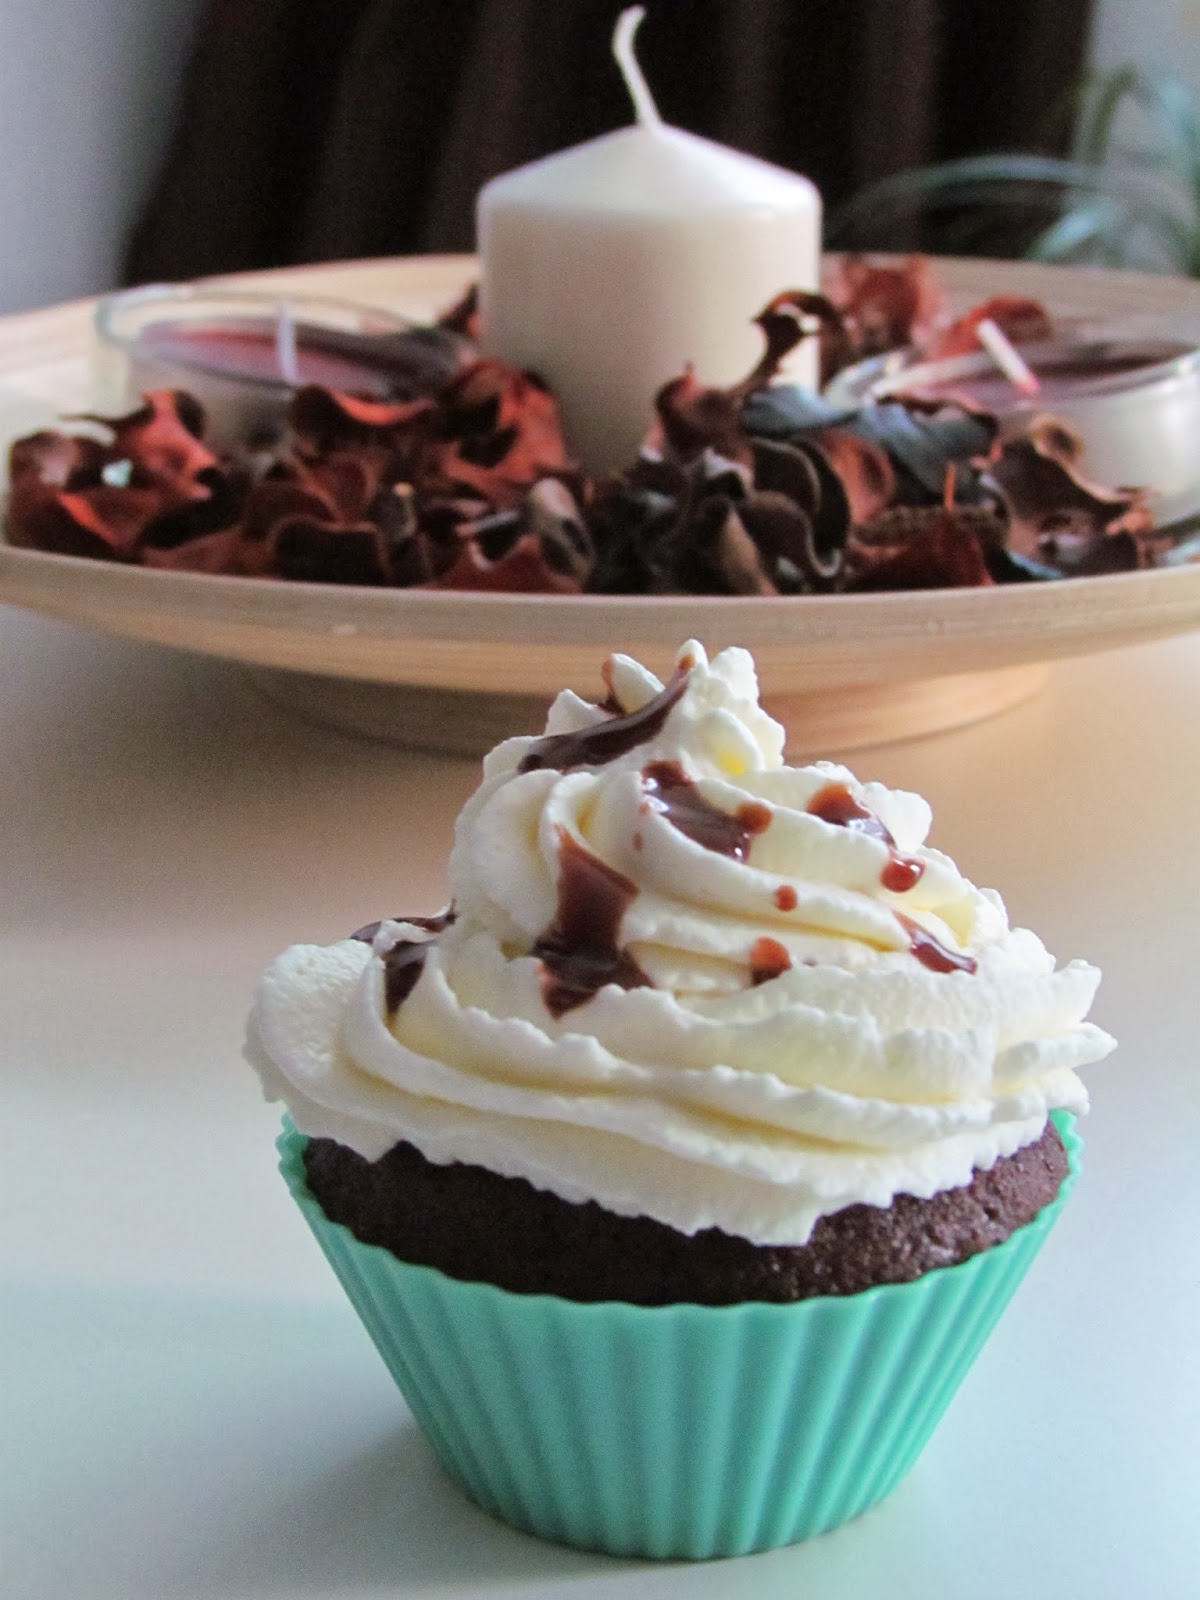 Briose umplute cu crema de ciocolata / Muffin stuffed with chocolate cream